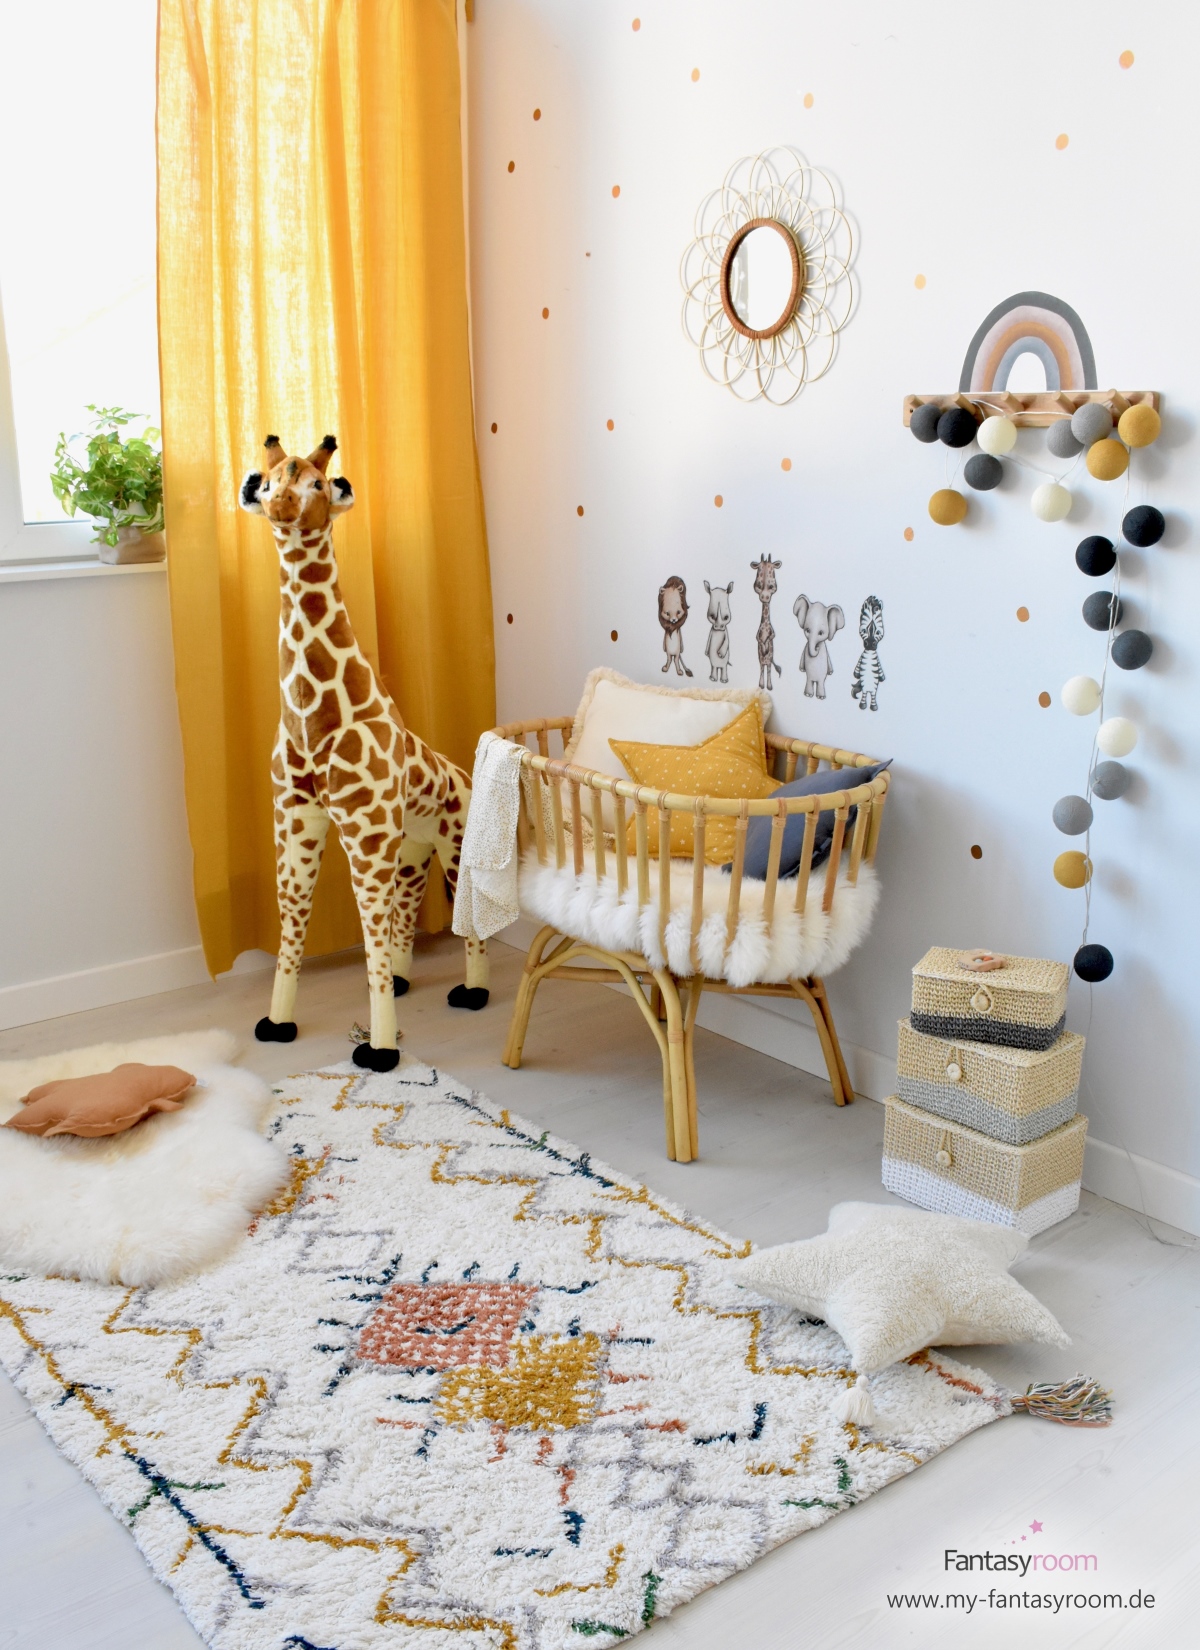 Gemütliches Babyzimmer mit Holztönen und Senfgelb, mit Rattanwiege, kuscheligem Teppich und passender Deko